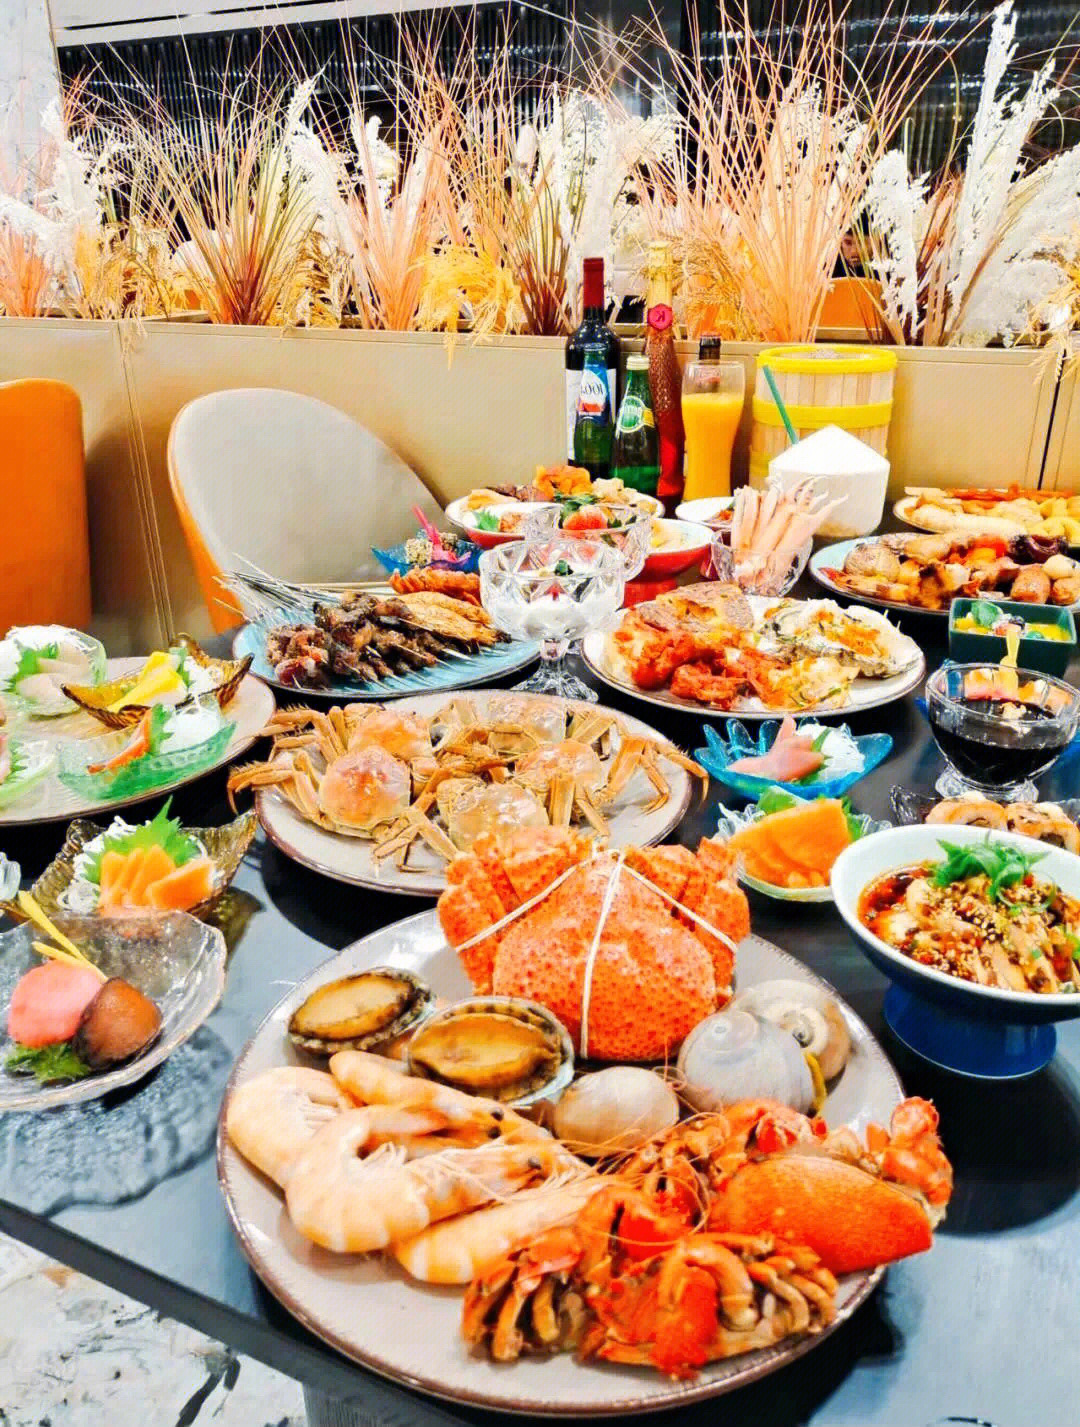 天呐号称青岛最大的海鲜自助餐厅开业啦75